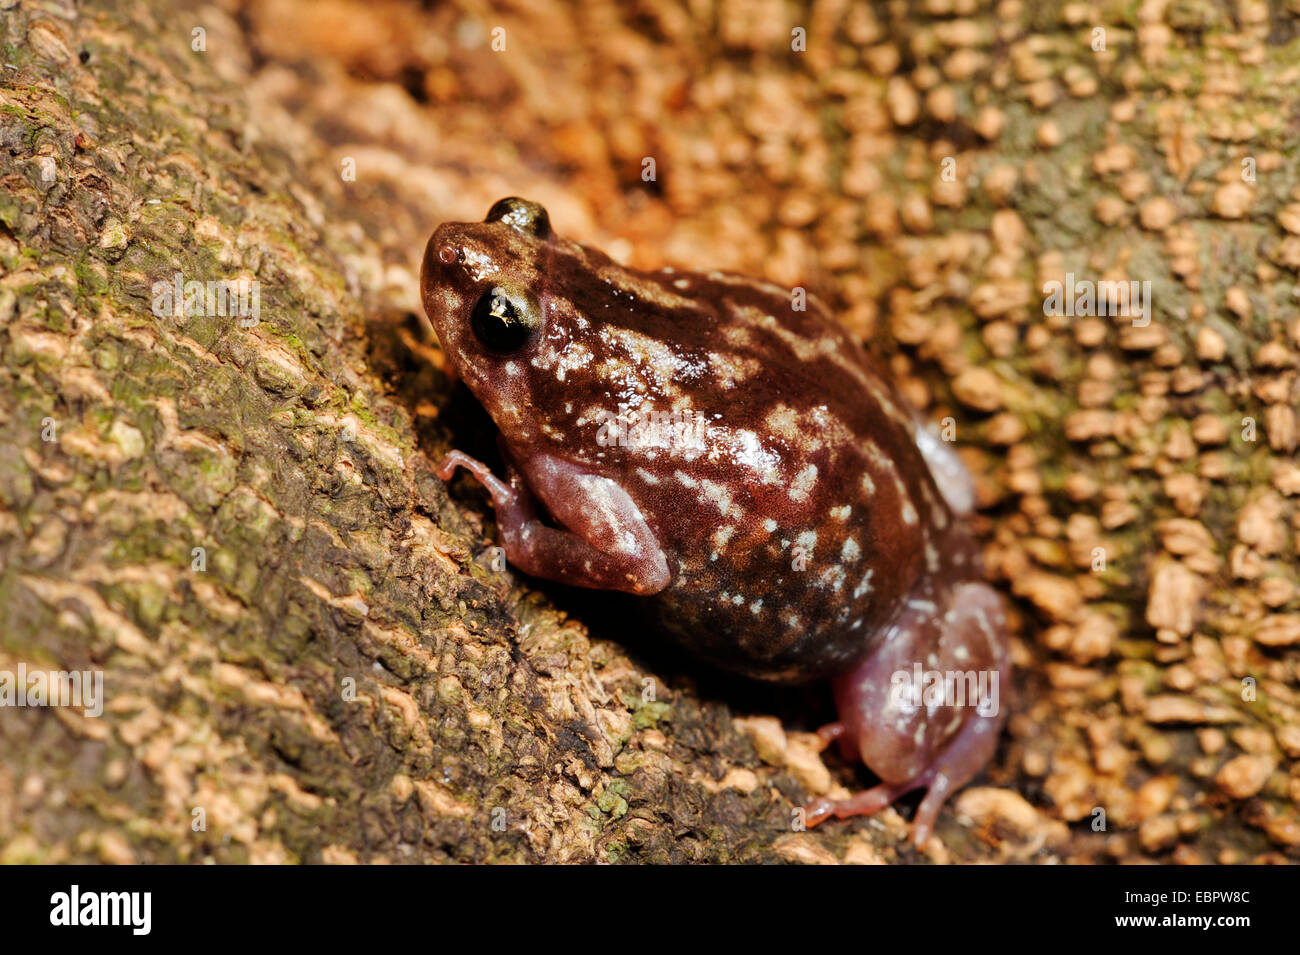 Termitière, grenouille ramanella Variable à ventre blanc, museau pug (cf. Ramanella variegata grenouille), sur le terrain, le Sri Lanka, Sinharaja Forest National Park Banque D'Images